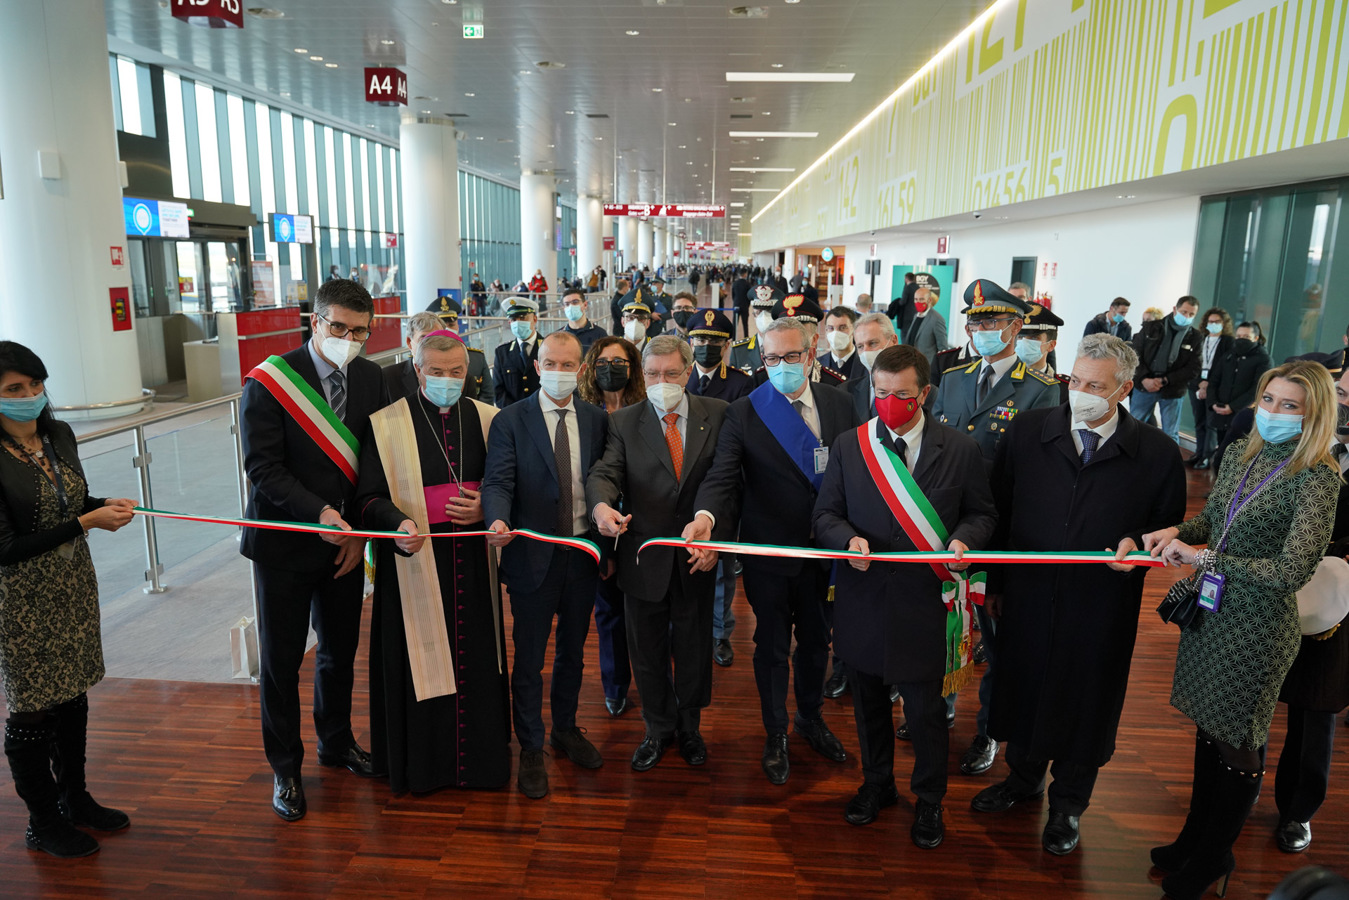 Aeroporto di Milano Bergamo: inaugurazione ampliamento lato ovest del terminal passeggeri